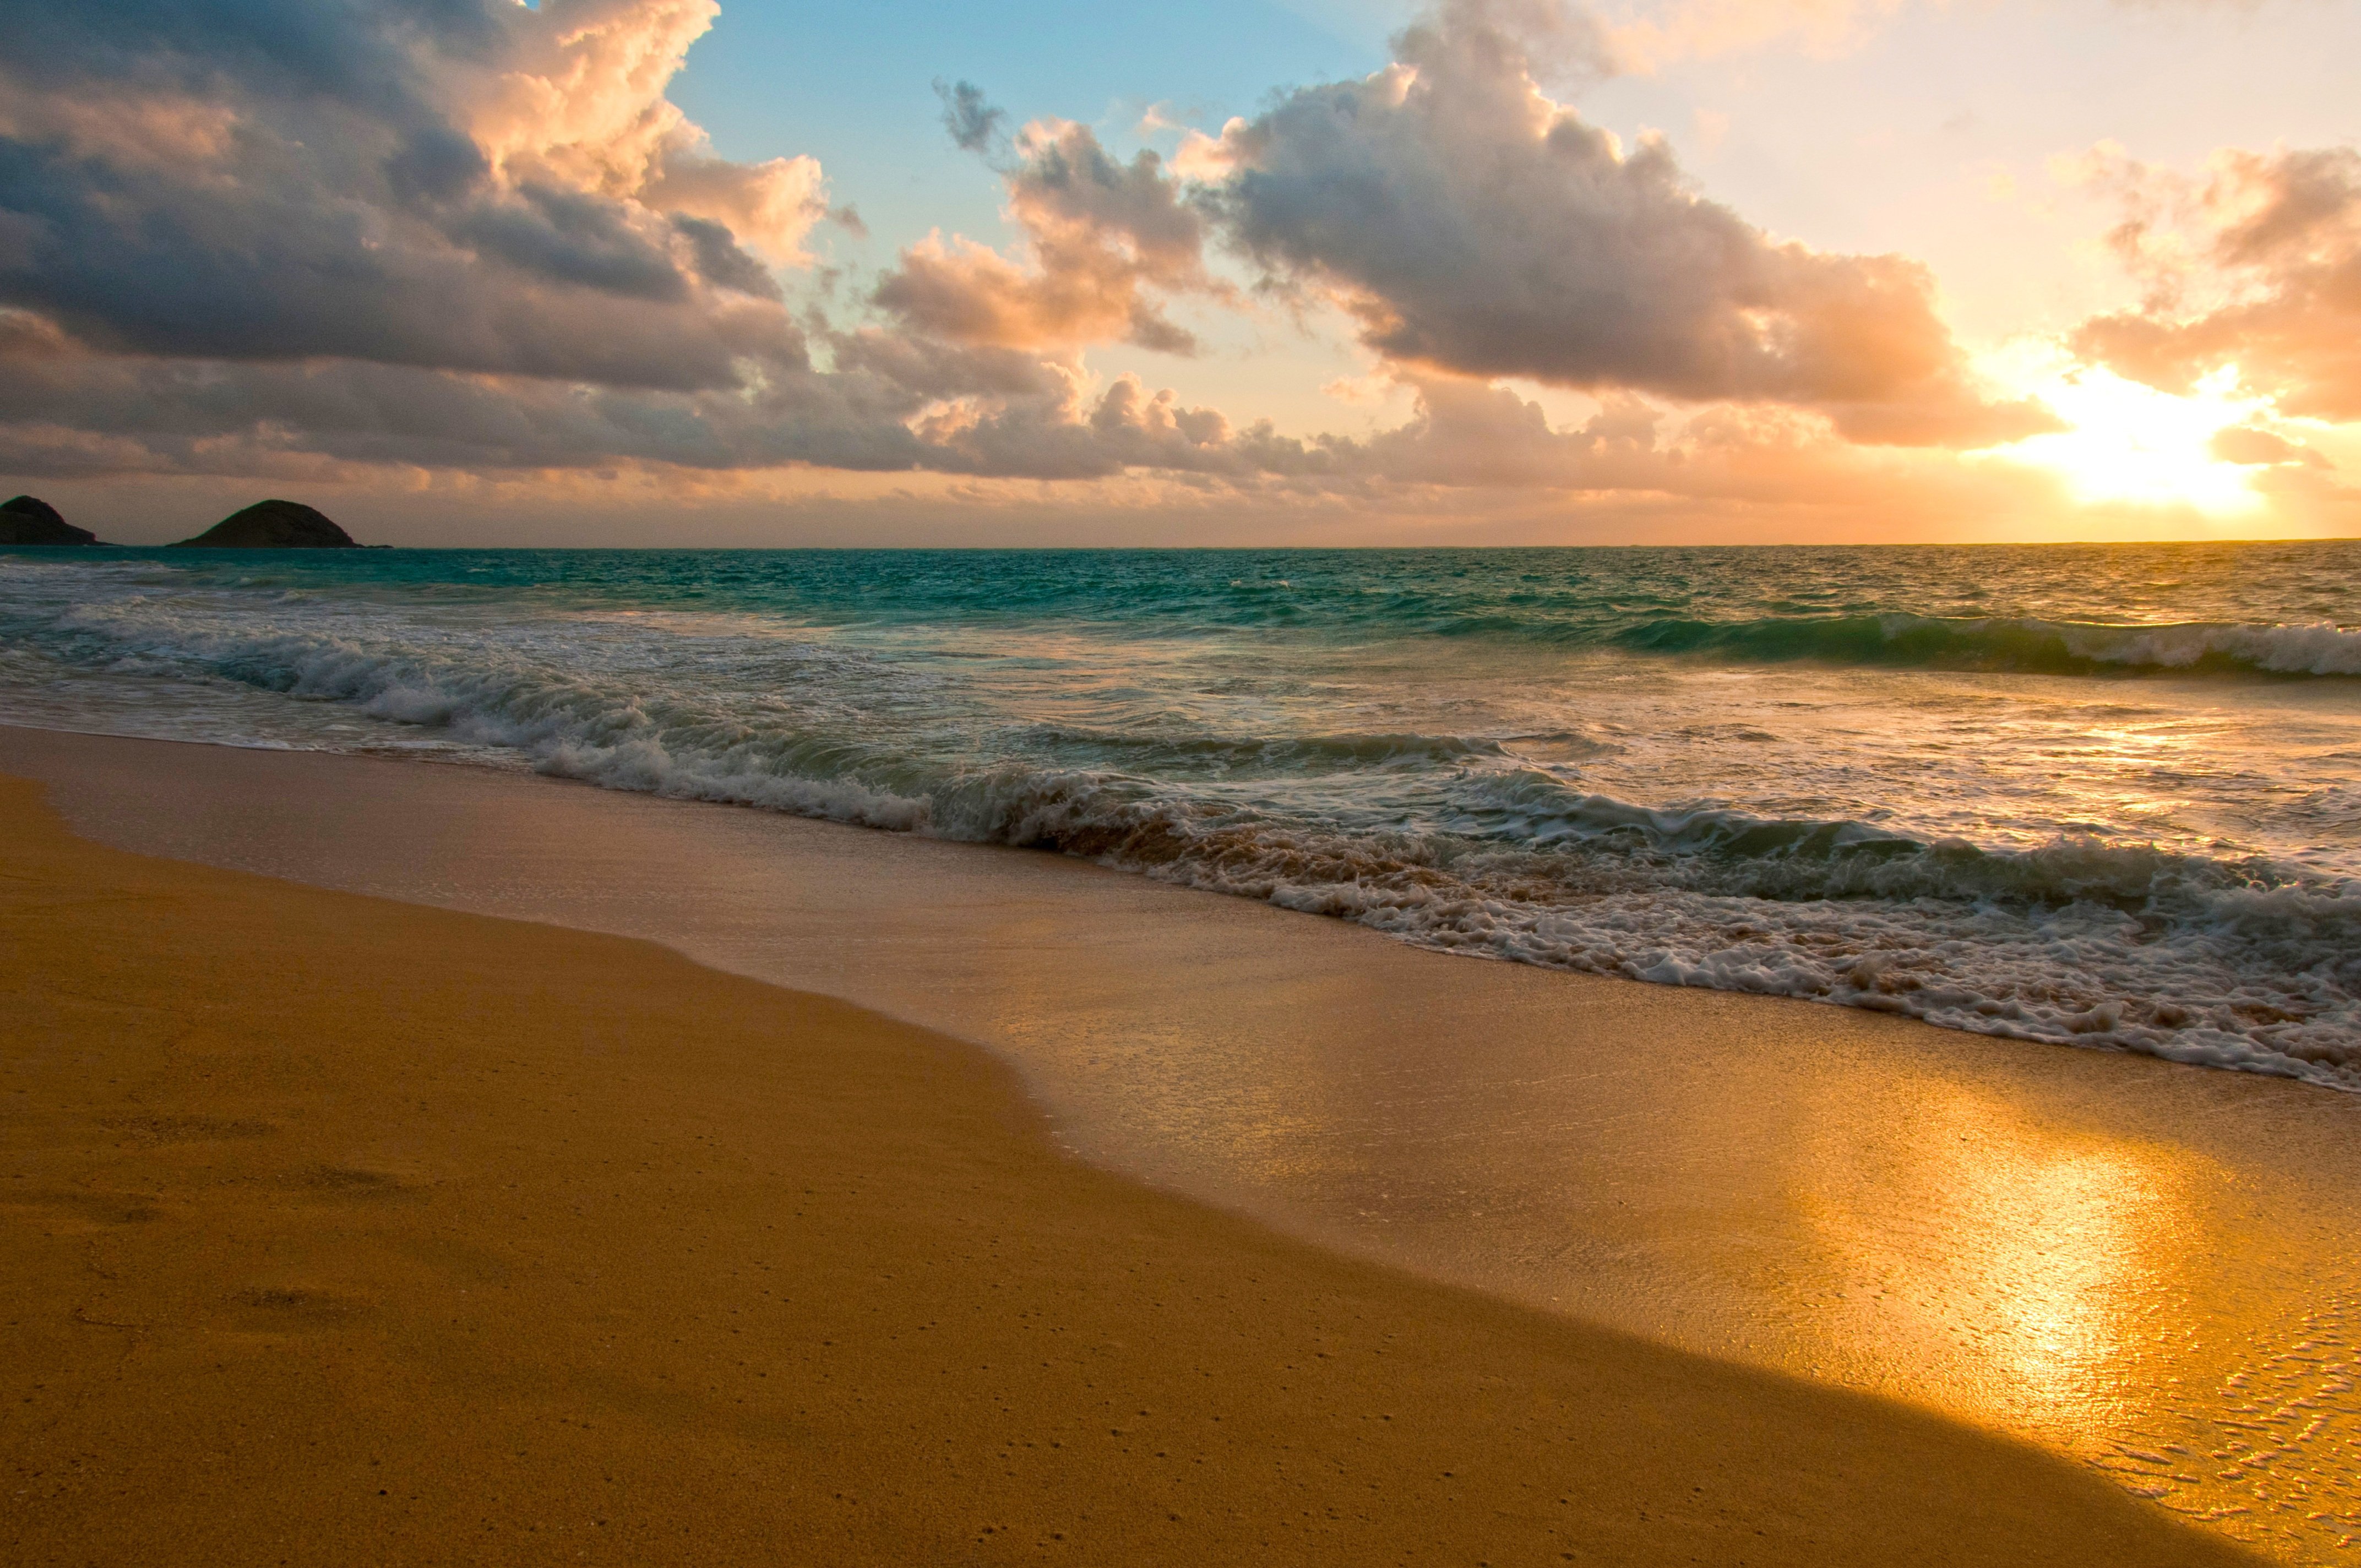 Побережье это. Море пляж. Берег моря. Море солнце песок. Солнце пляж.